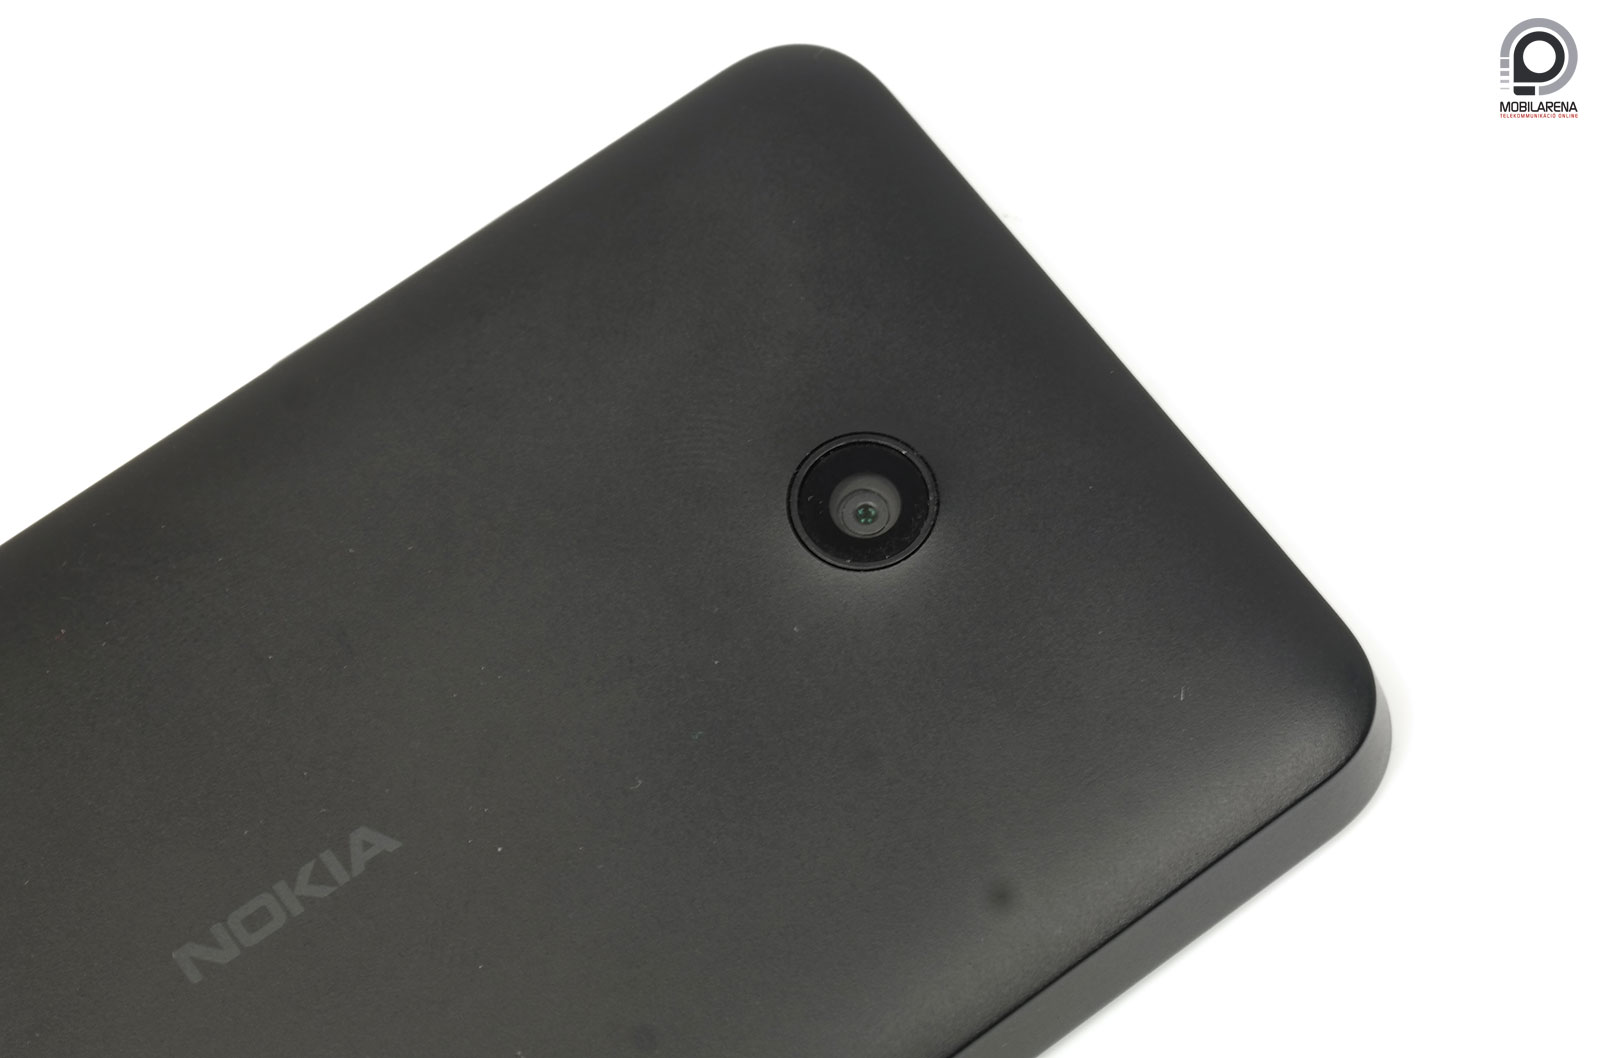 Nokia Lumia 630 - okos folytatás - Mobilarena Okostelefon teszt -  Nyomtatóbarát verzió